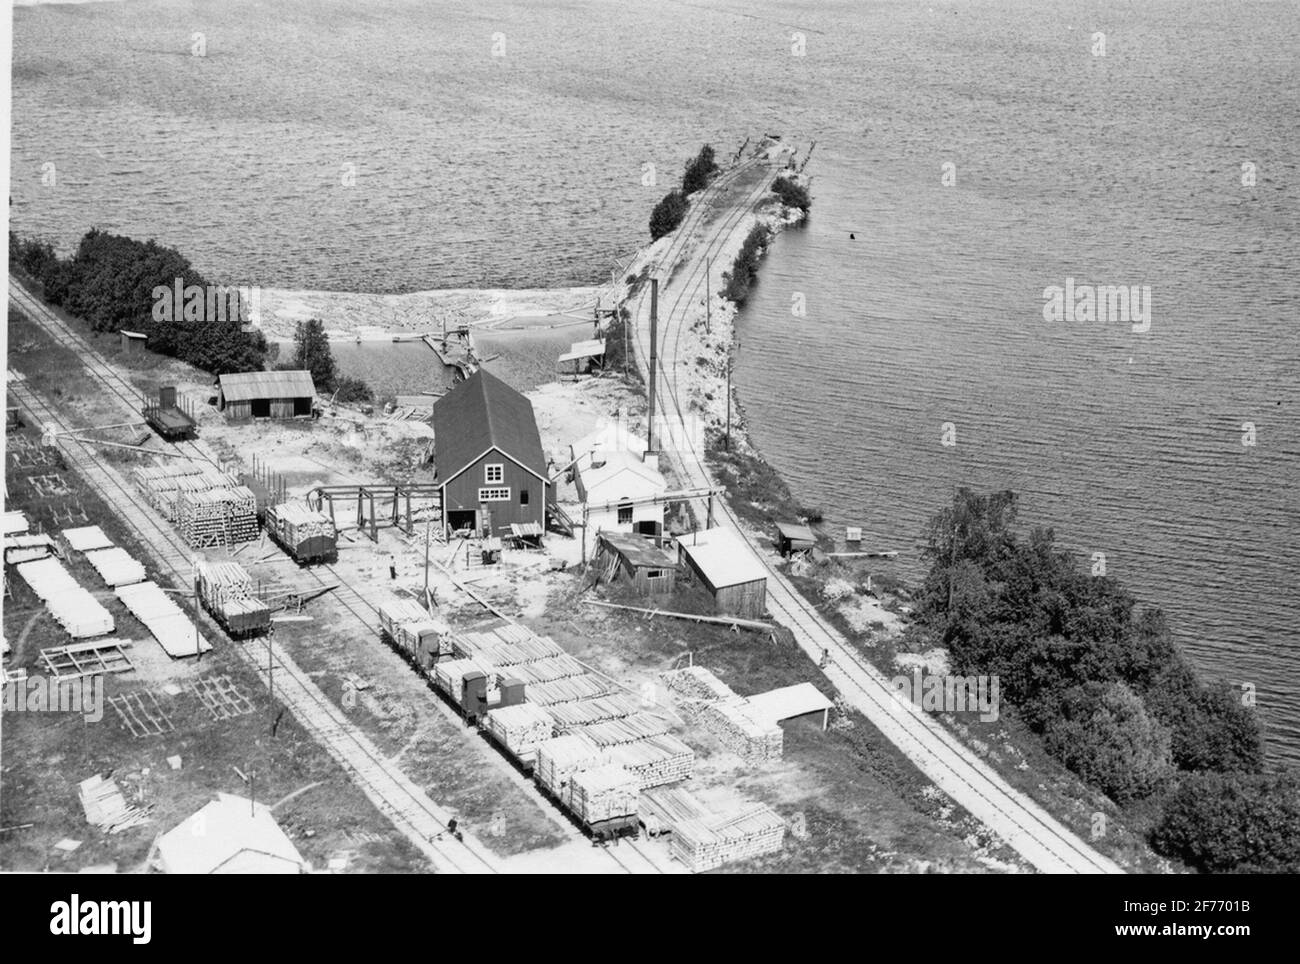 Fotografía aérea sobre el puerto en el lago, tomada por el fotógrafo aéreo Oscar Bladh en 1938. Foto de stock